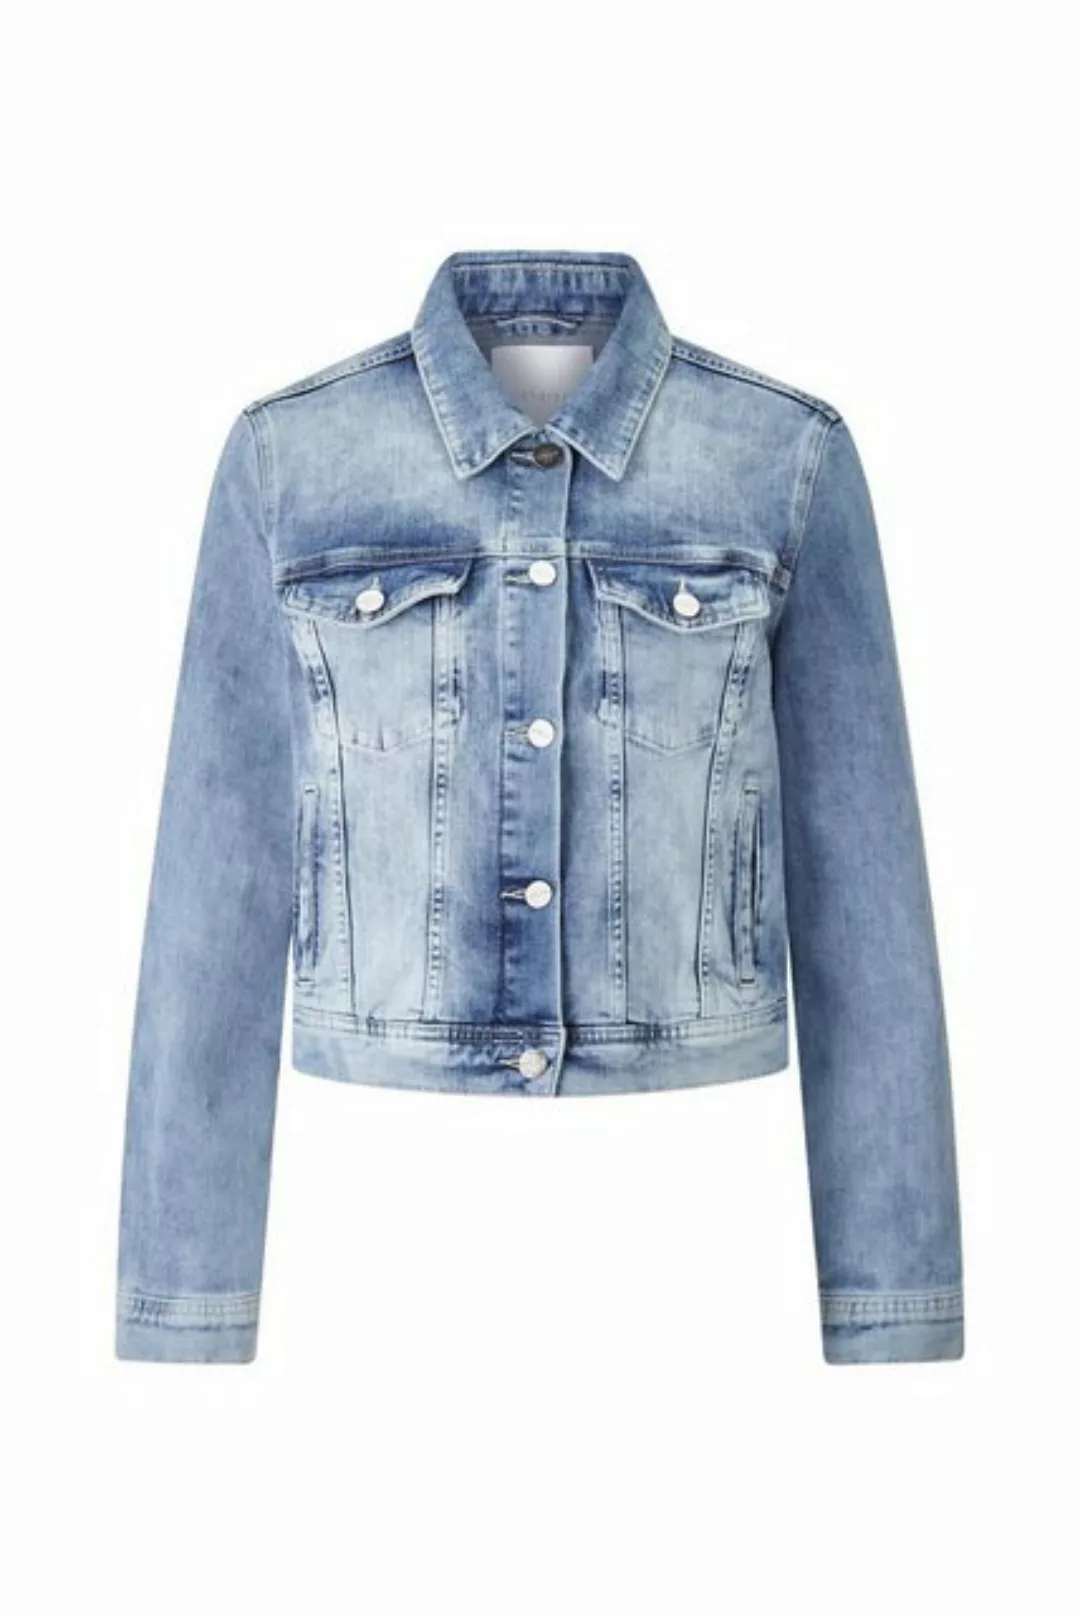 Rich & Royal Outdoorjacke Blue denim jacket organic, denim blue günstig online kaufen